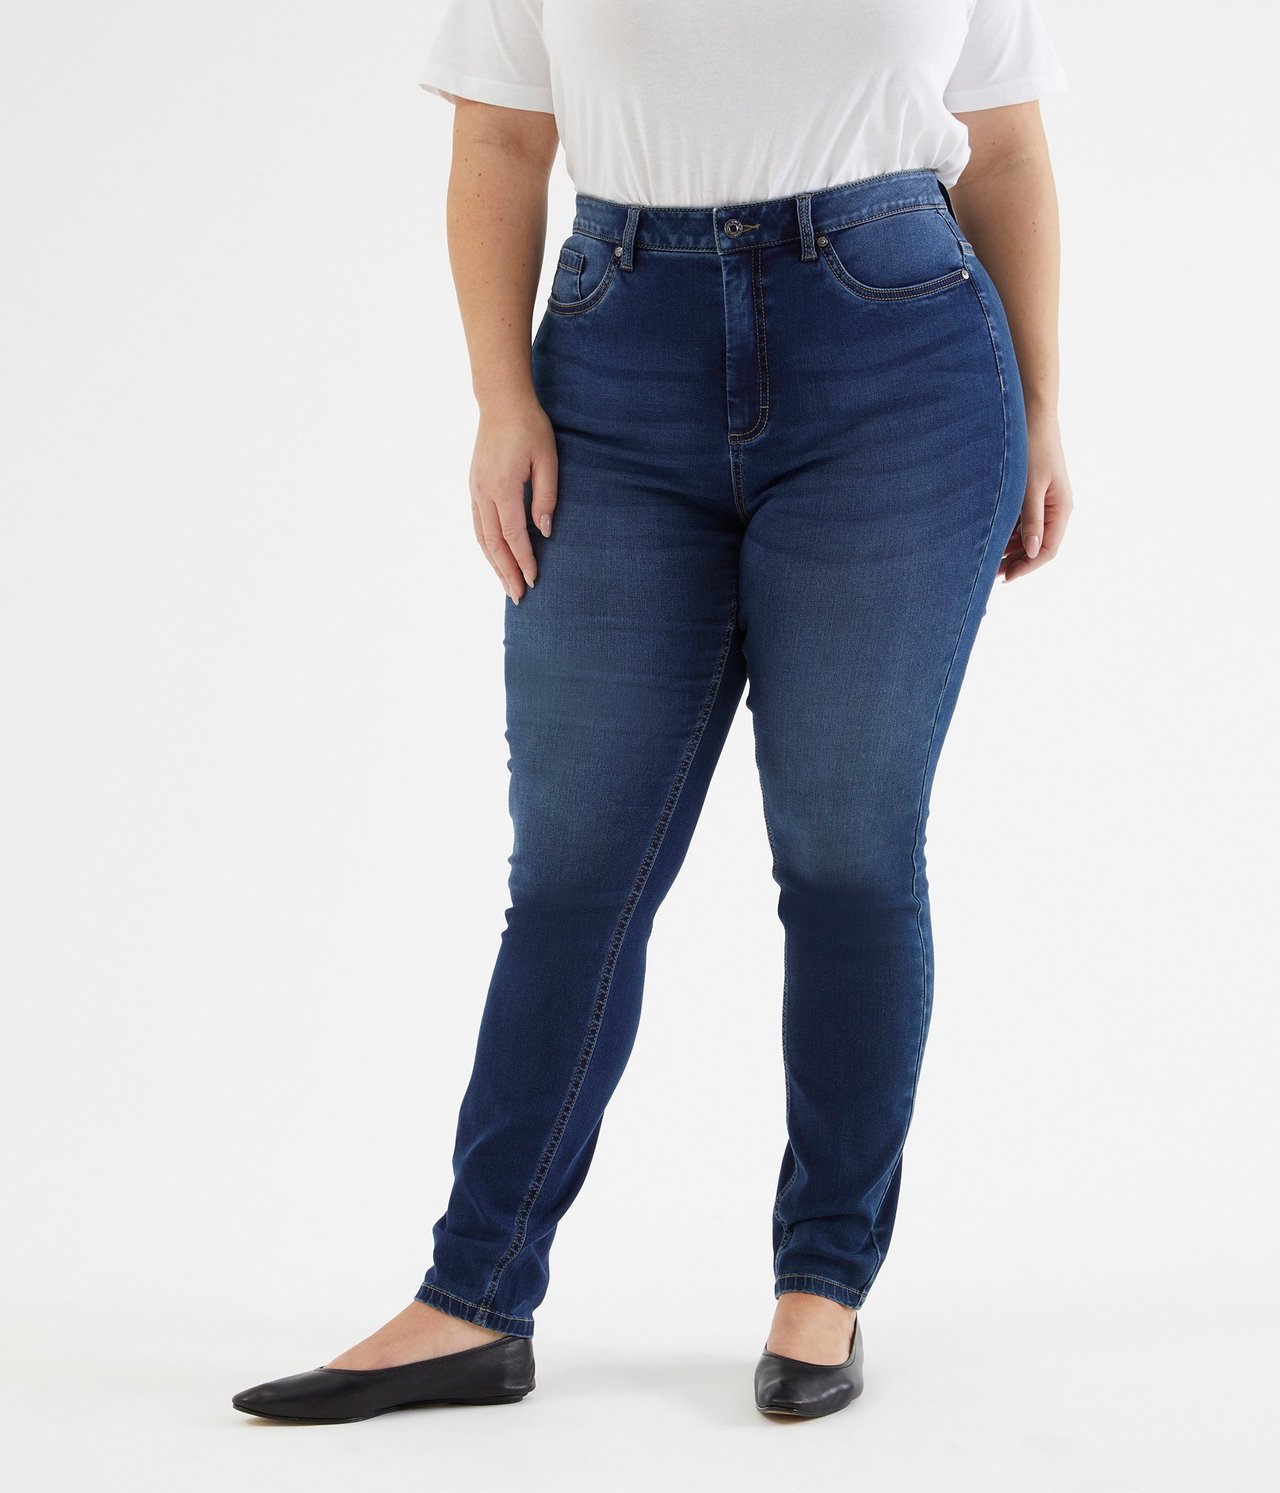 Ebba slim jeans extra long leg Mørk denim - null - 4